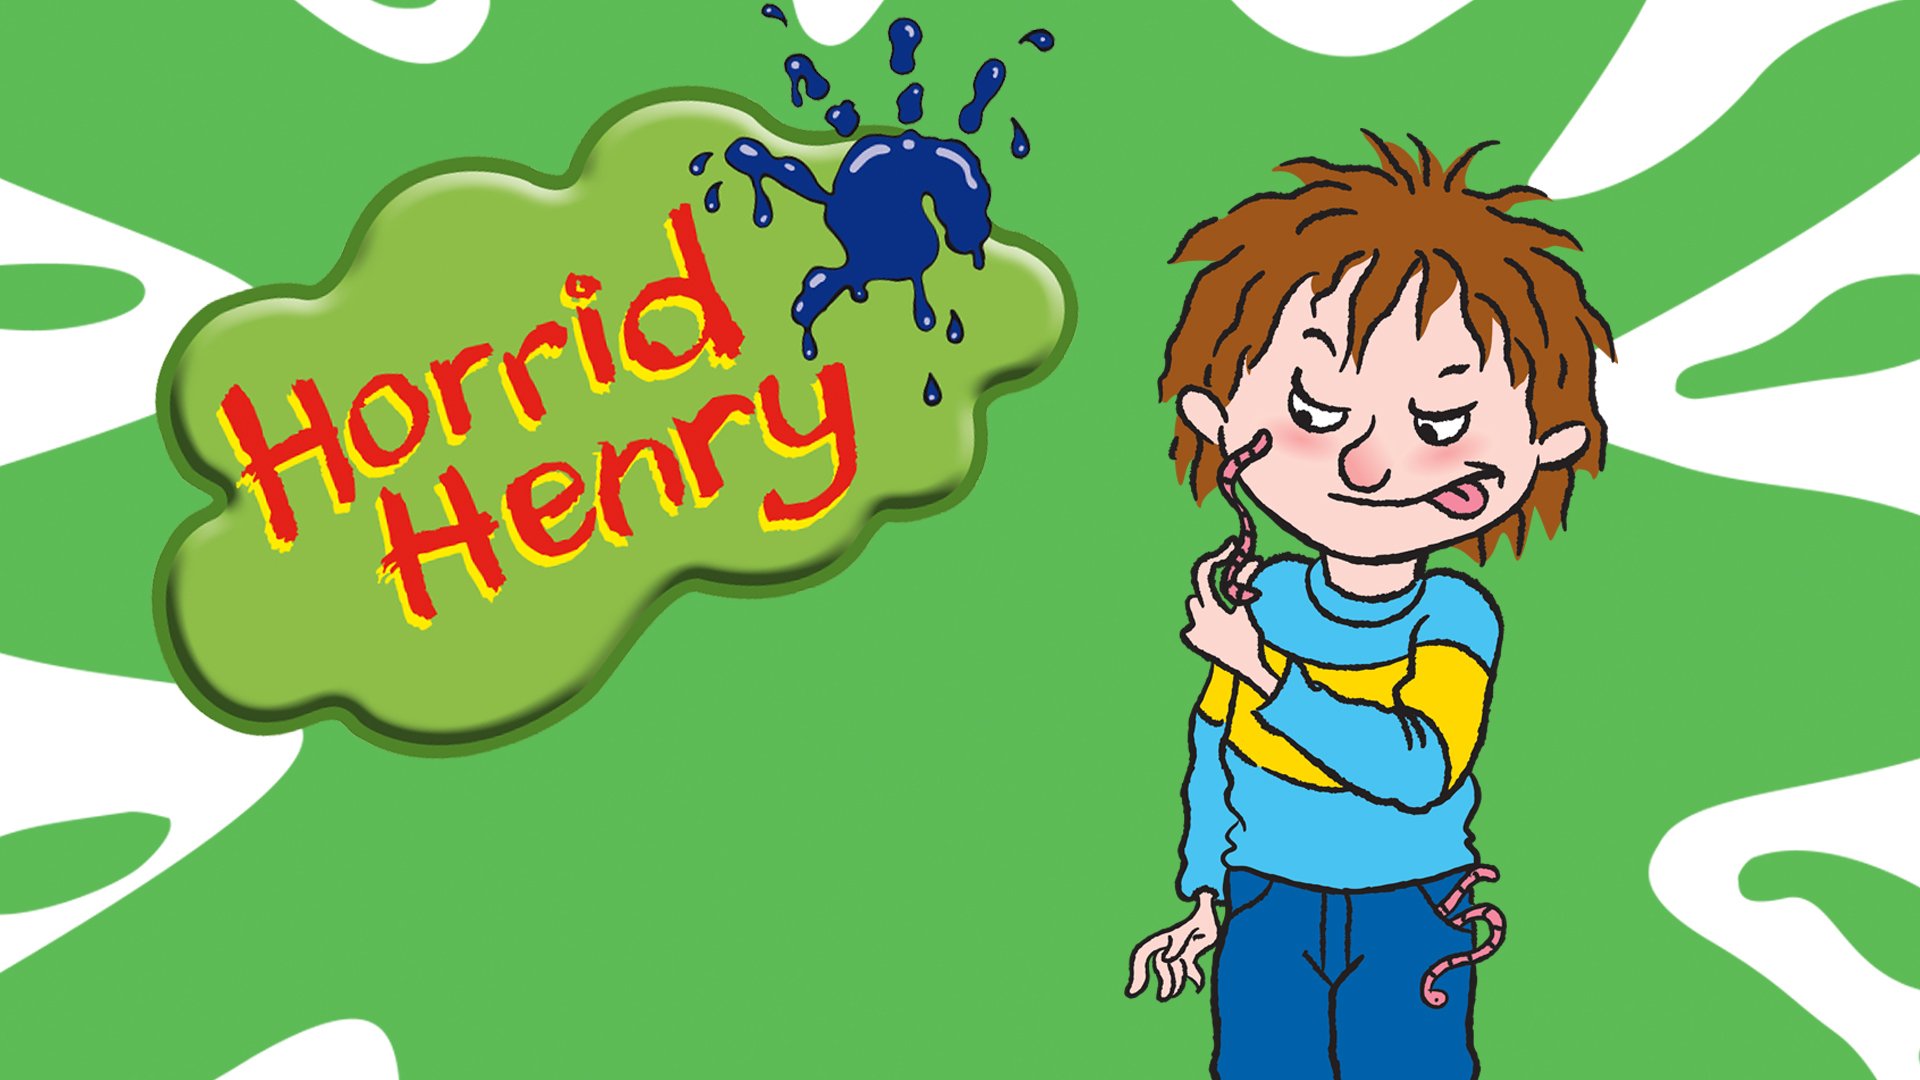 Watch Horrid Henry Season 1 Episode 23 Online - Stream Full Episodes